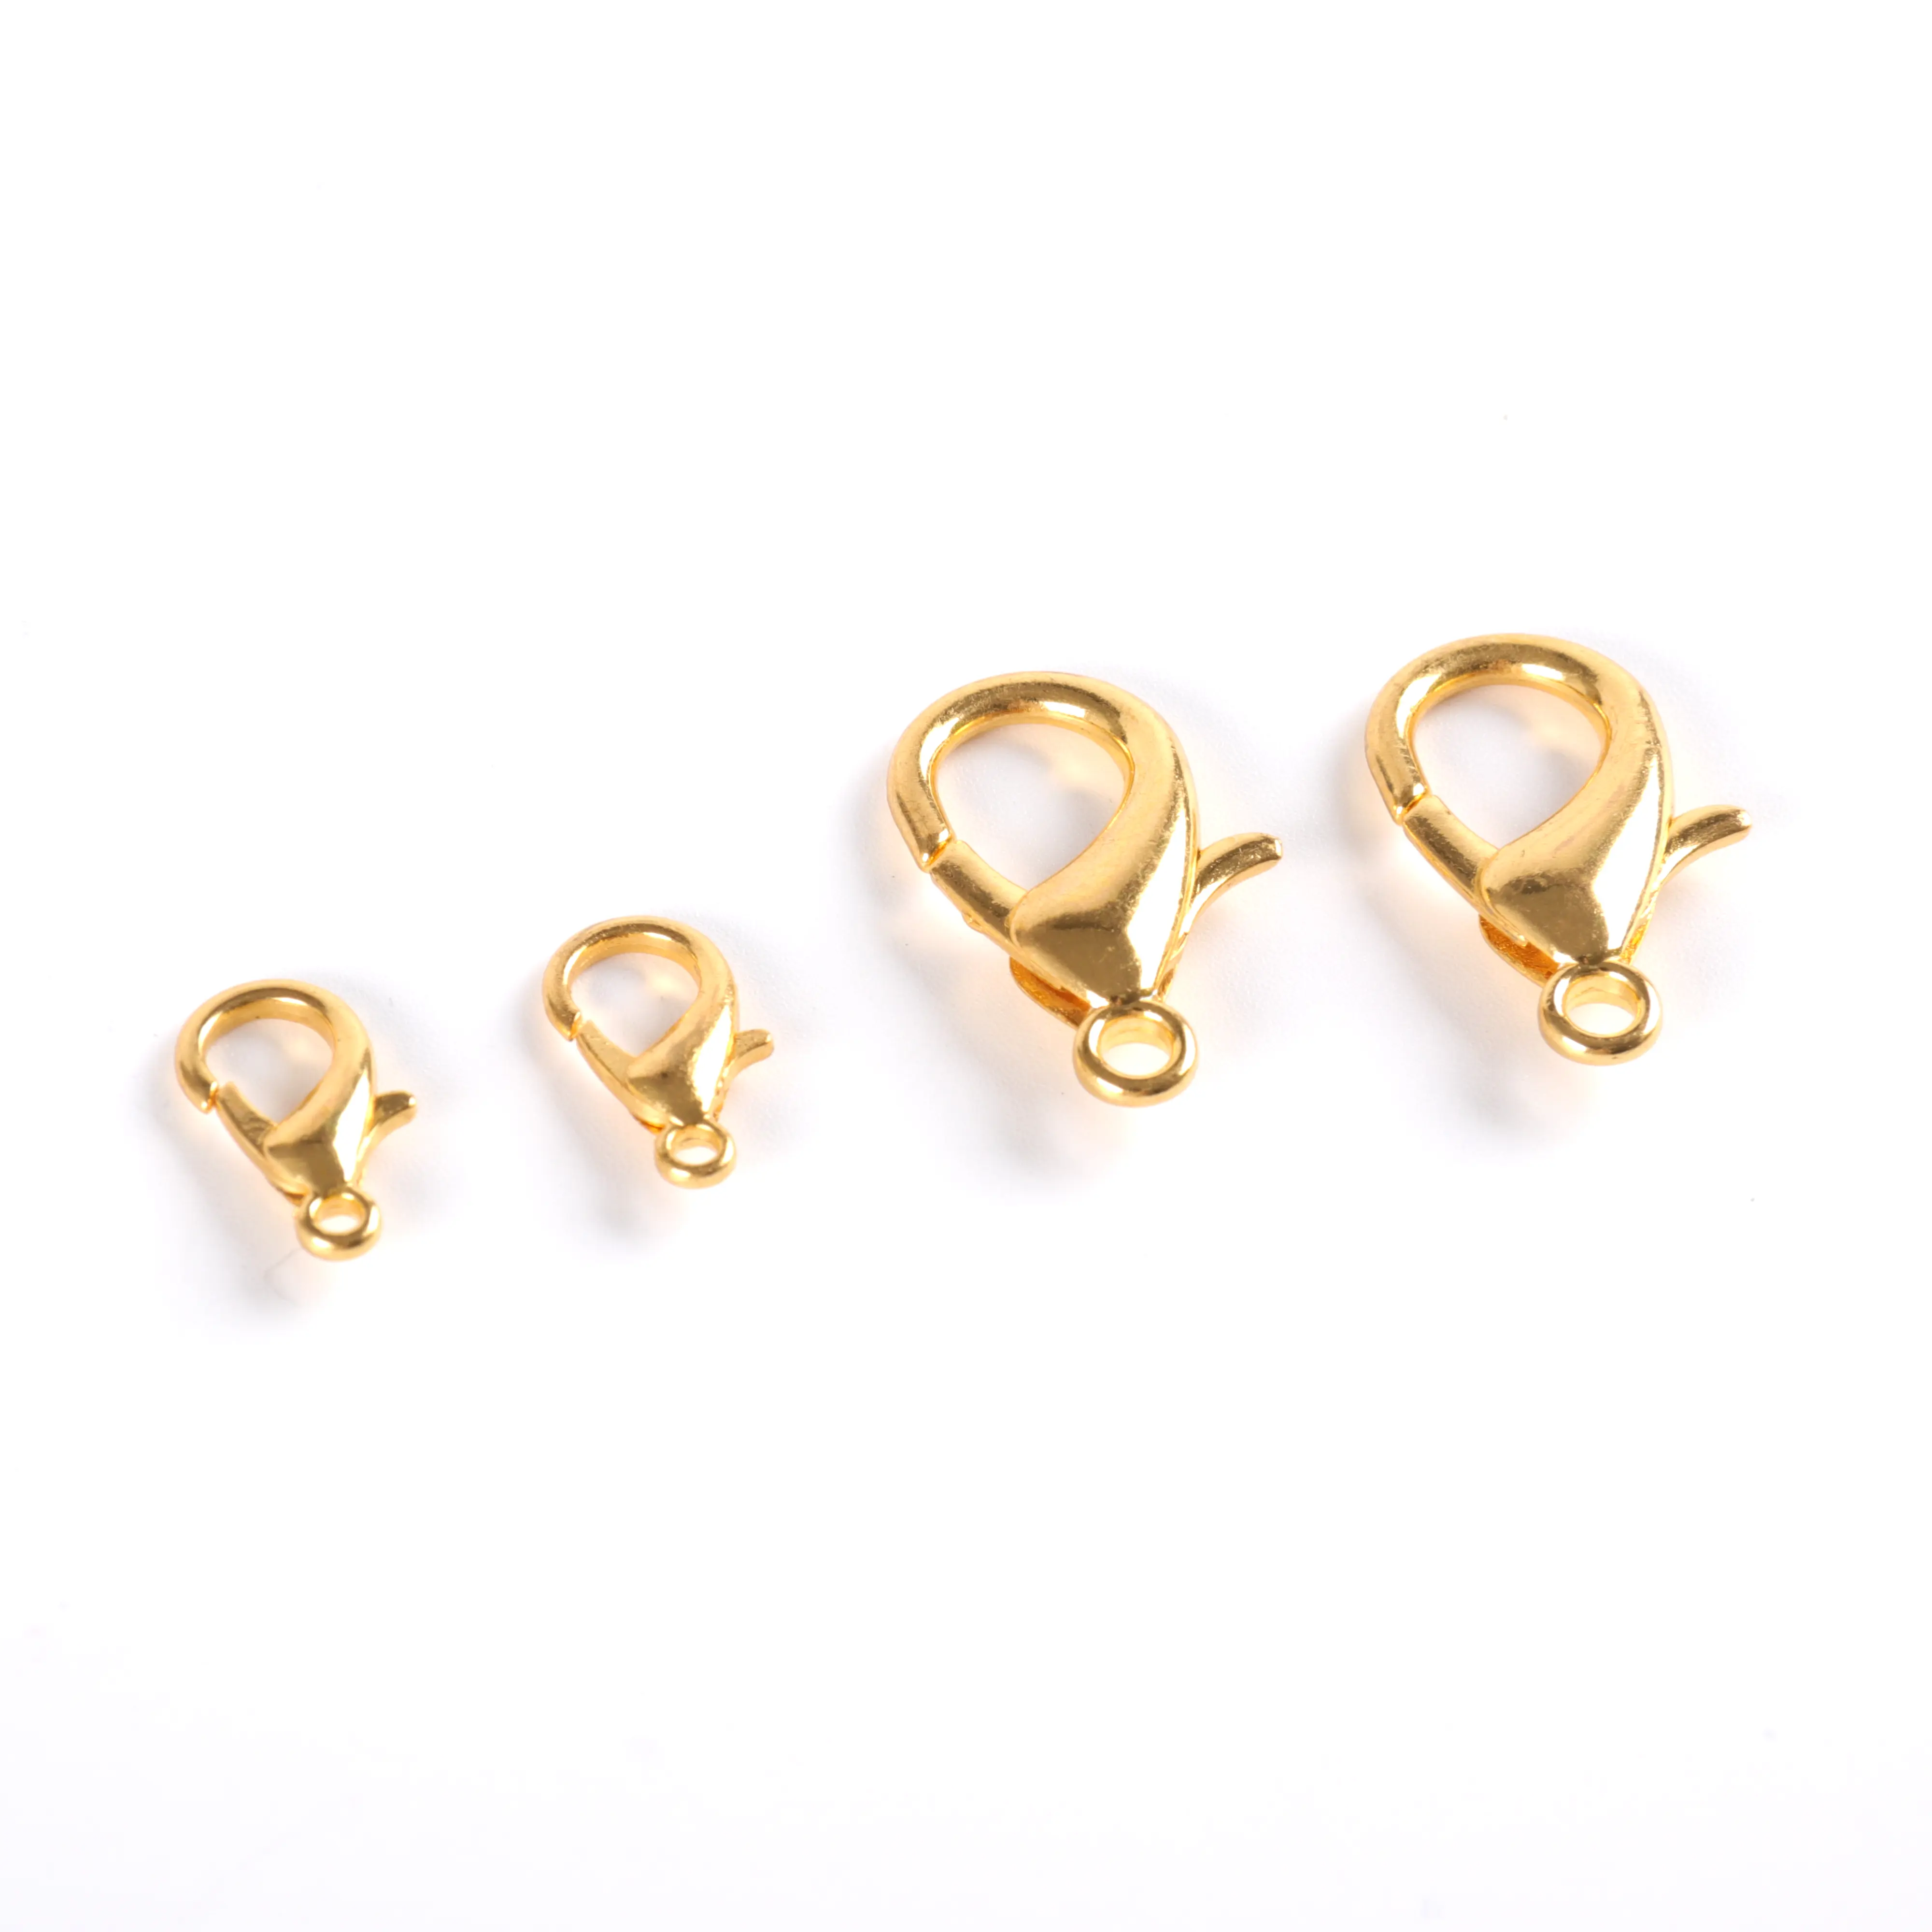 Porte-clés anneau en or et argent tendance, fabrication artisanale, 30mm, Long 80mm, fermoir mousqueton, pour jouets